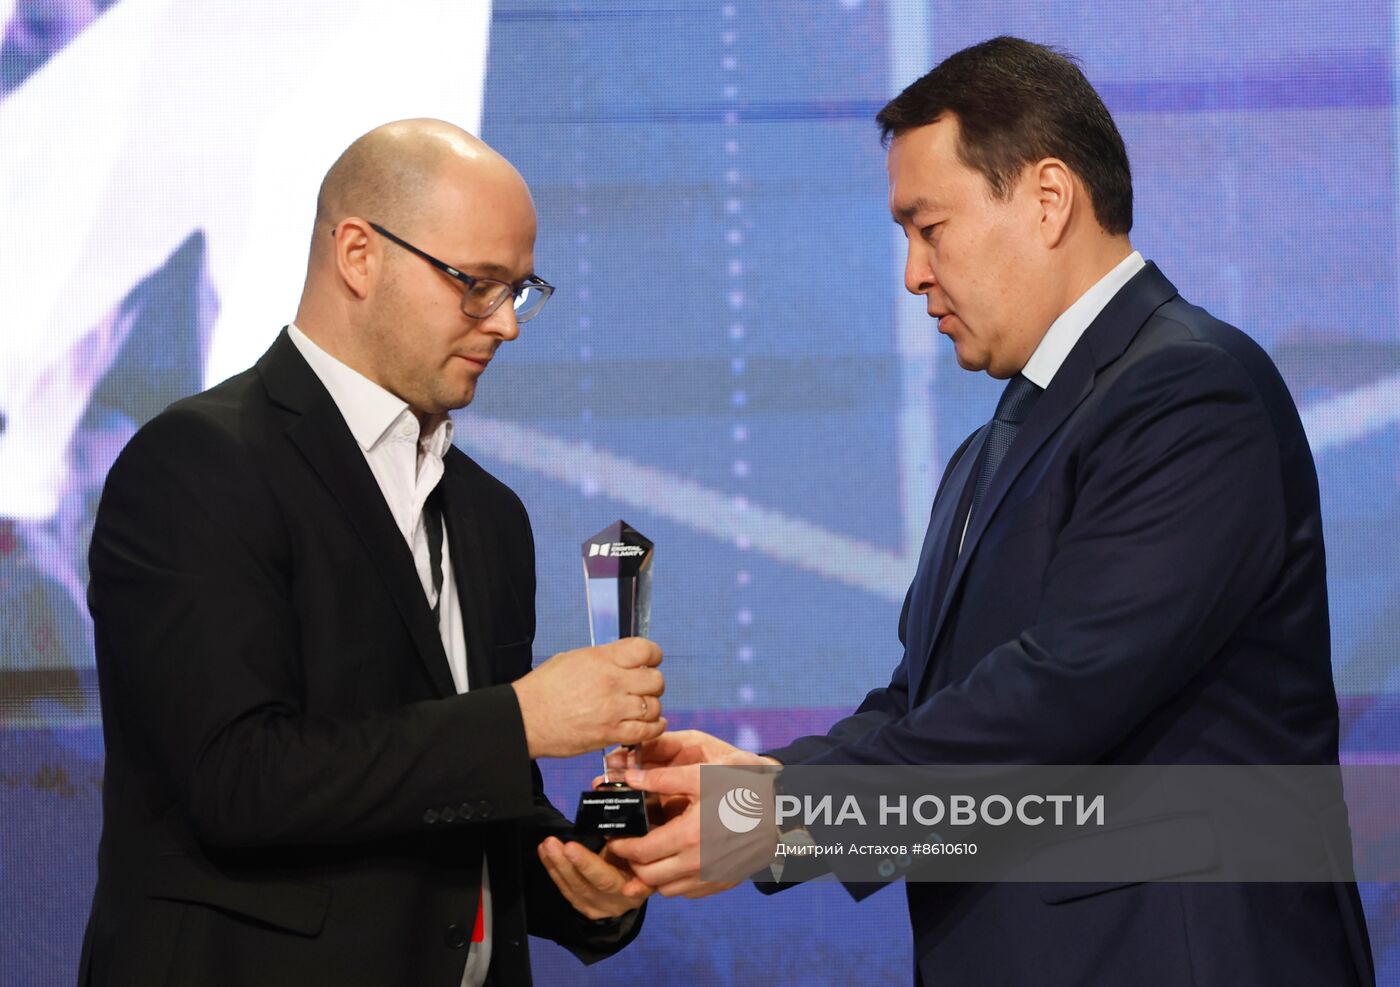 Премьер-министр РФ М. Мишустин принял участие в заседании Евразийского межправительственного совета в Алма-Ате